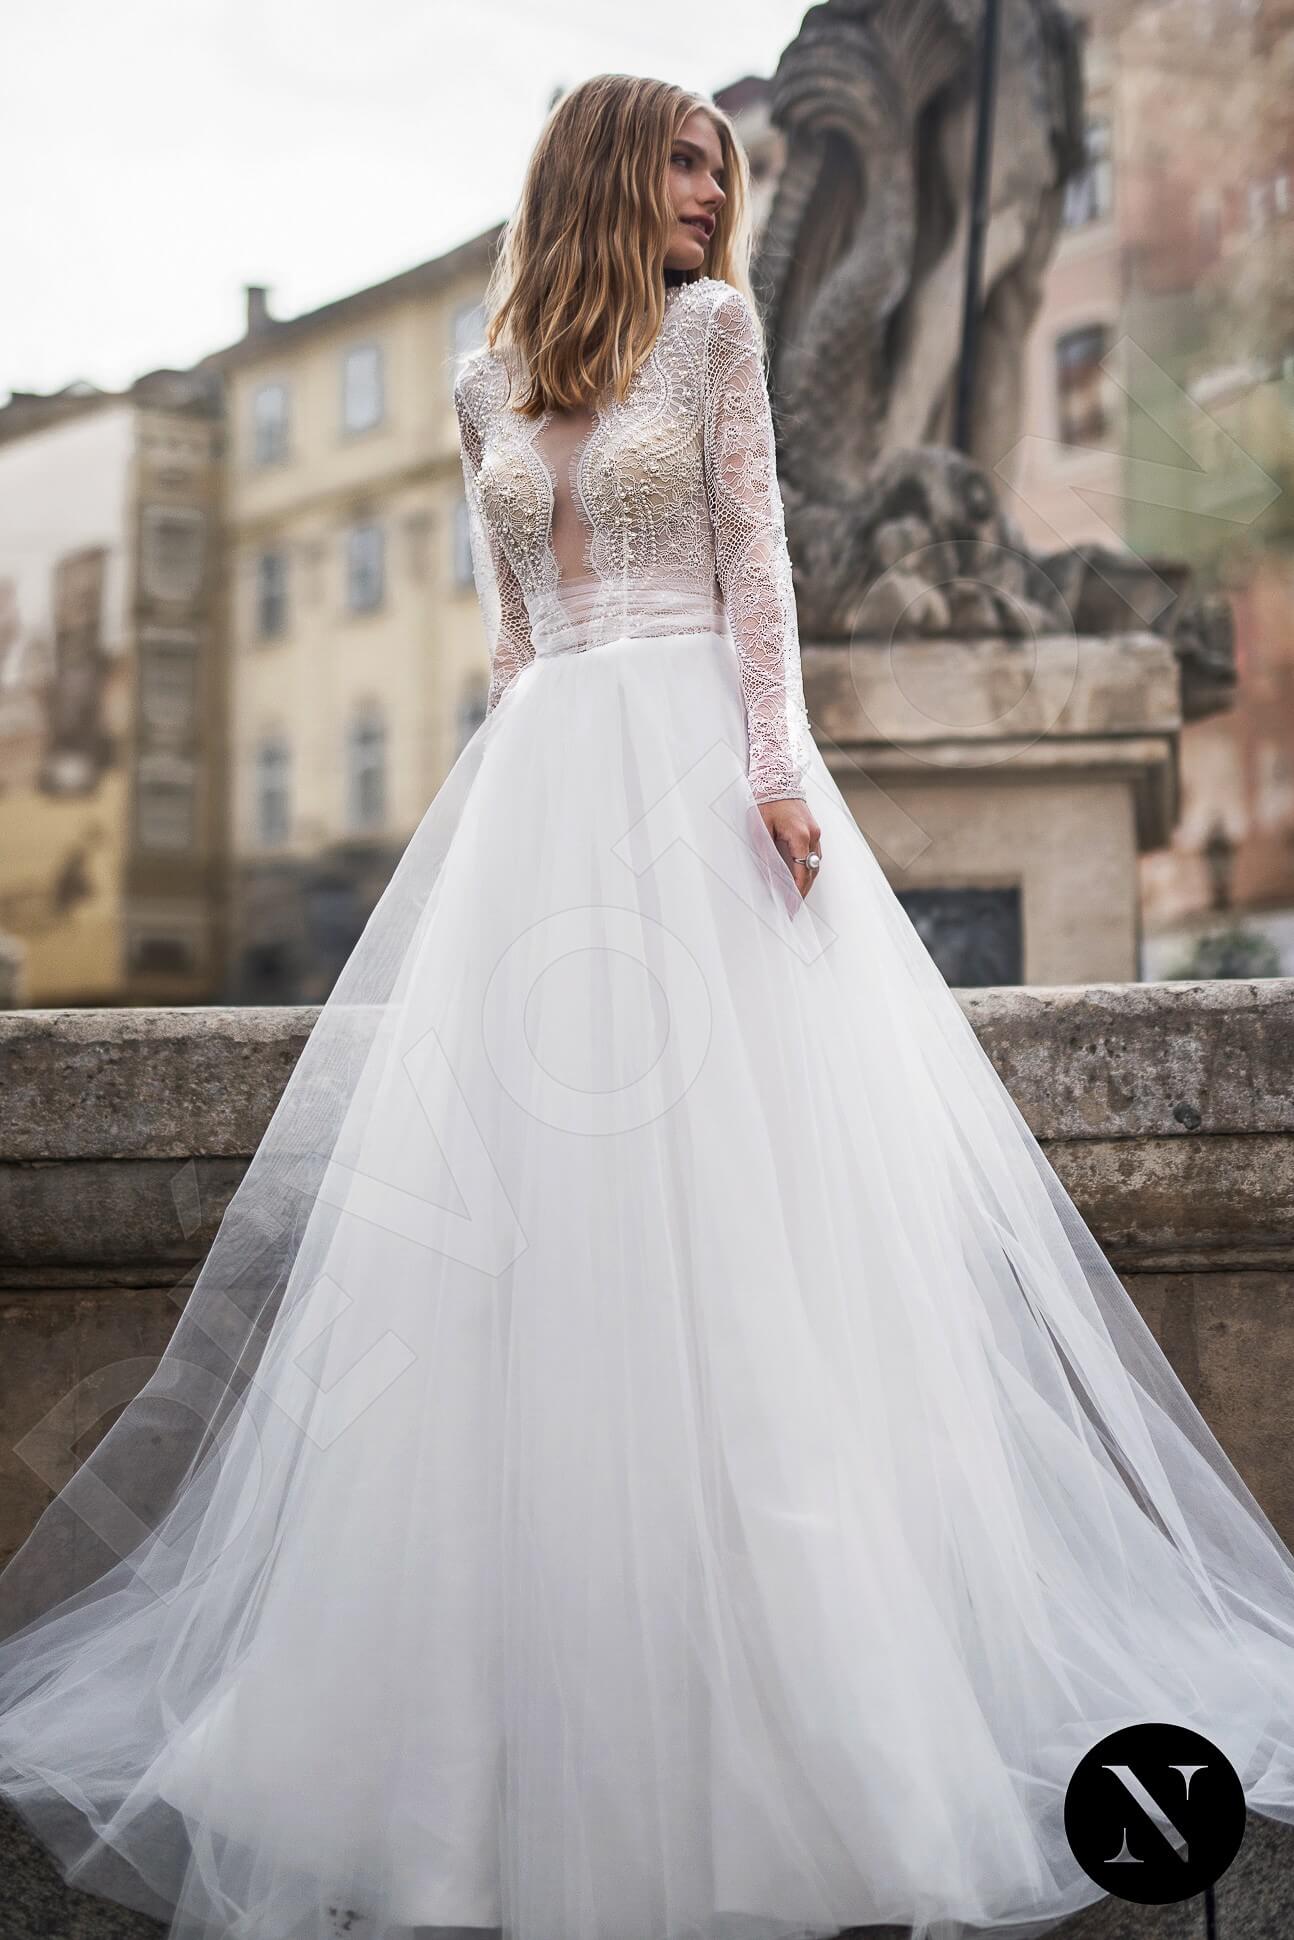 Bridal Fashion Trends for 2022 - Paris Connection